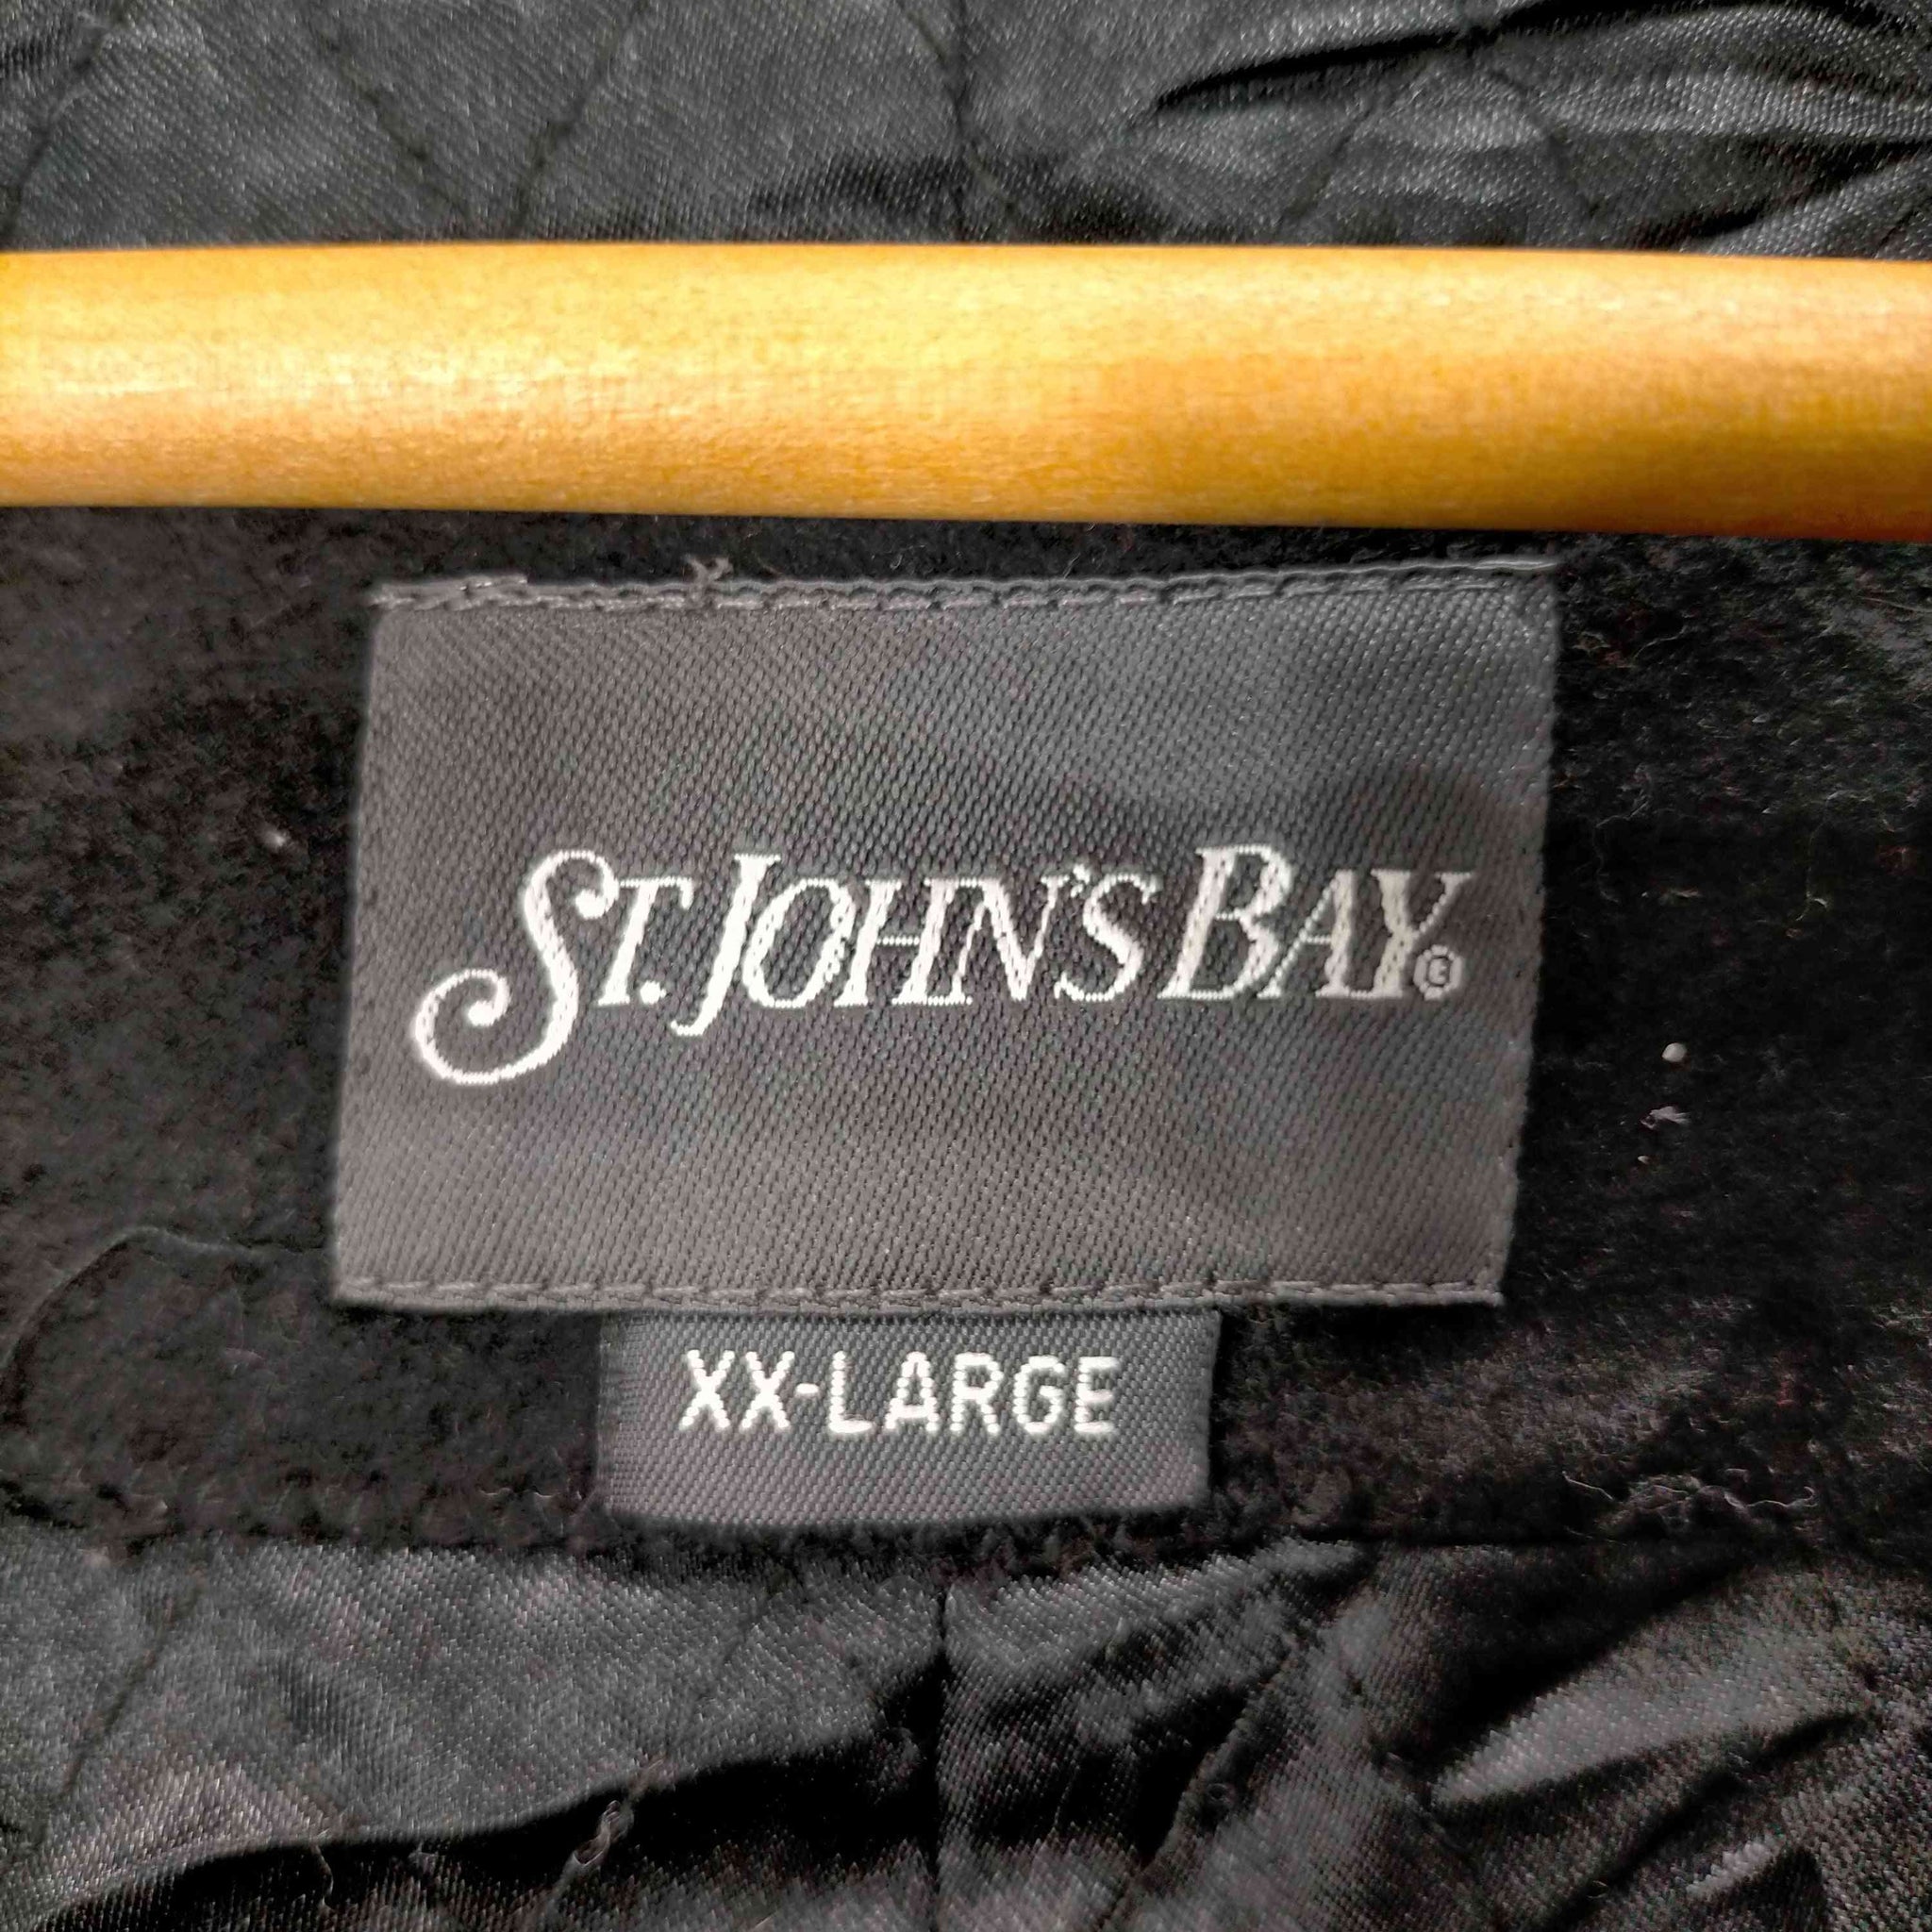 ST.JOHNS BAY(セントジョンズベイ)ビッグサイズピーコート